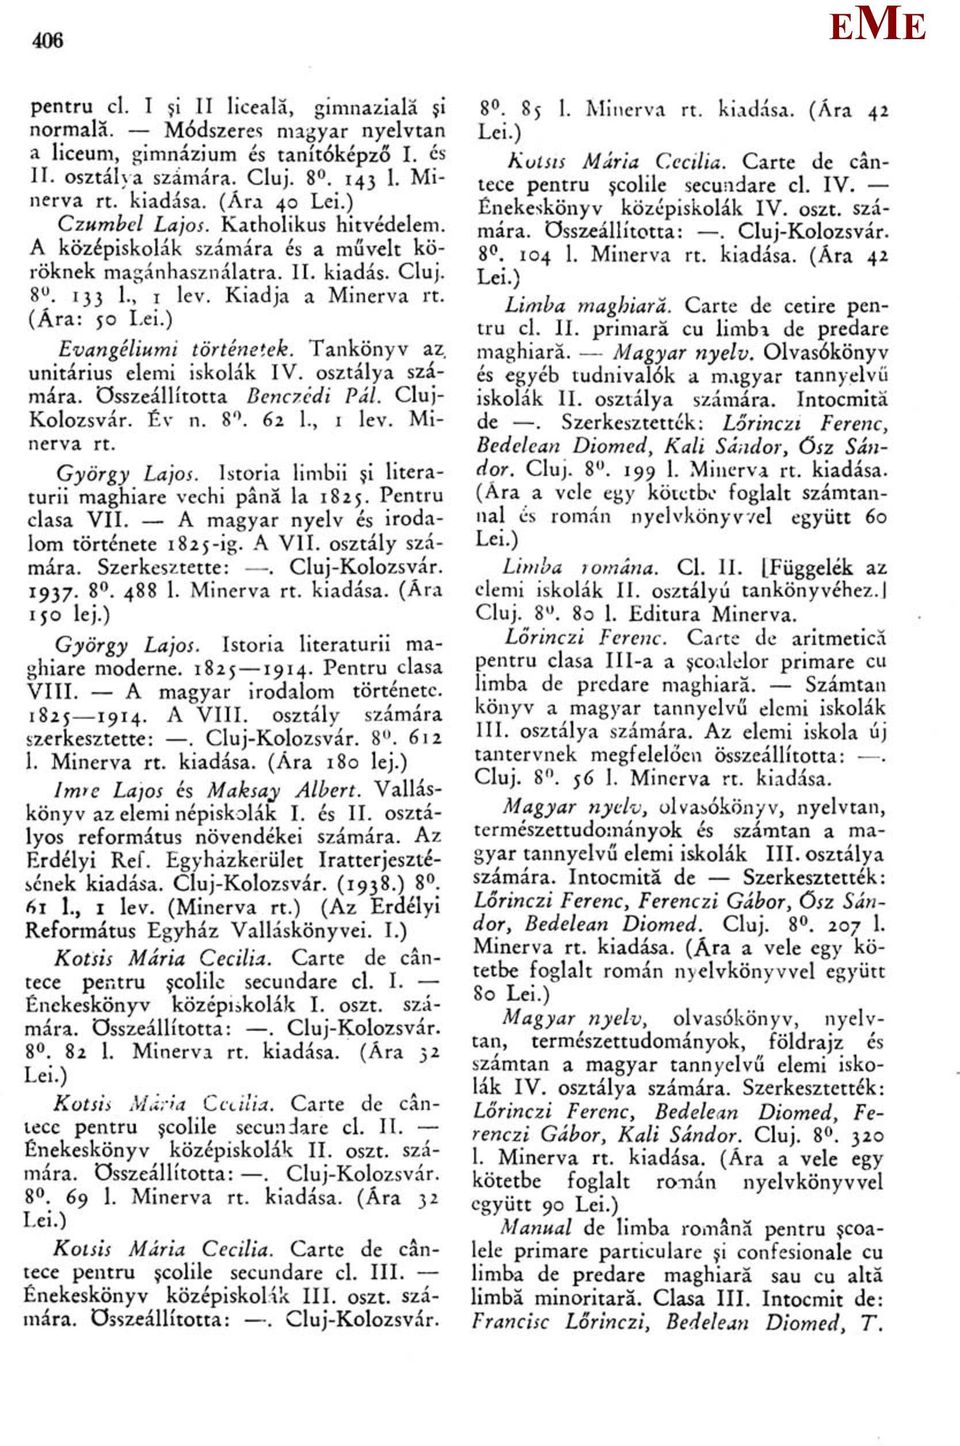 Tankönyv az unitárius elemi iskolák IV. osztálya számára. összeállította Benczédi Pál. Cluj- Kolozsvár. Év n. 8. 62 1., 1 lev. inerva rt. György Lajos.